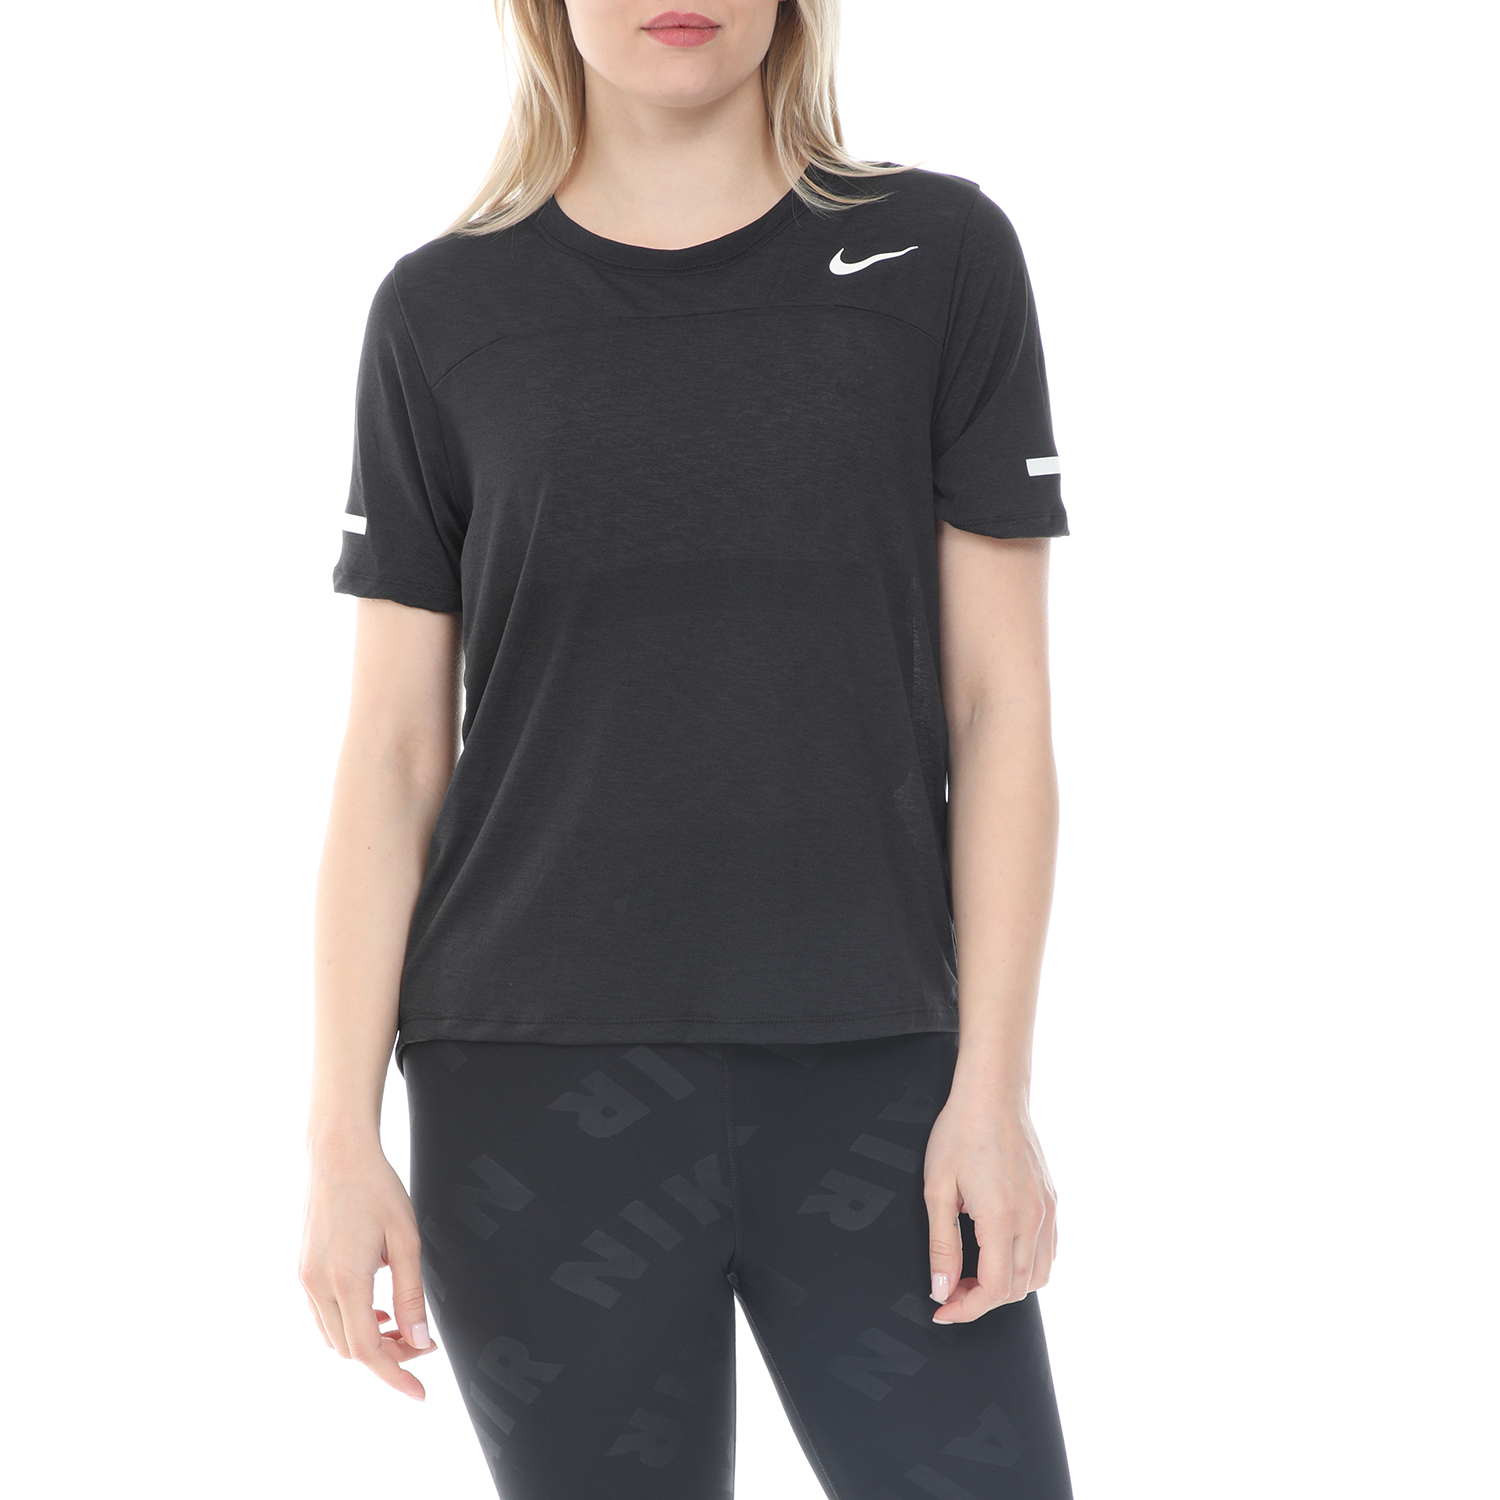 Γυναικεία/Ρούχα/Αθλητικά/T-shirt-Τοπ NIKE - Γυναικεία μπλούζα NIKE ICNCLSH TOP SS BEST μαύρη